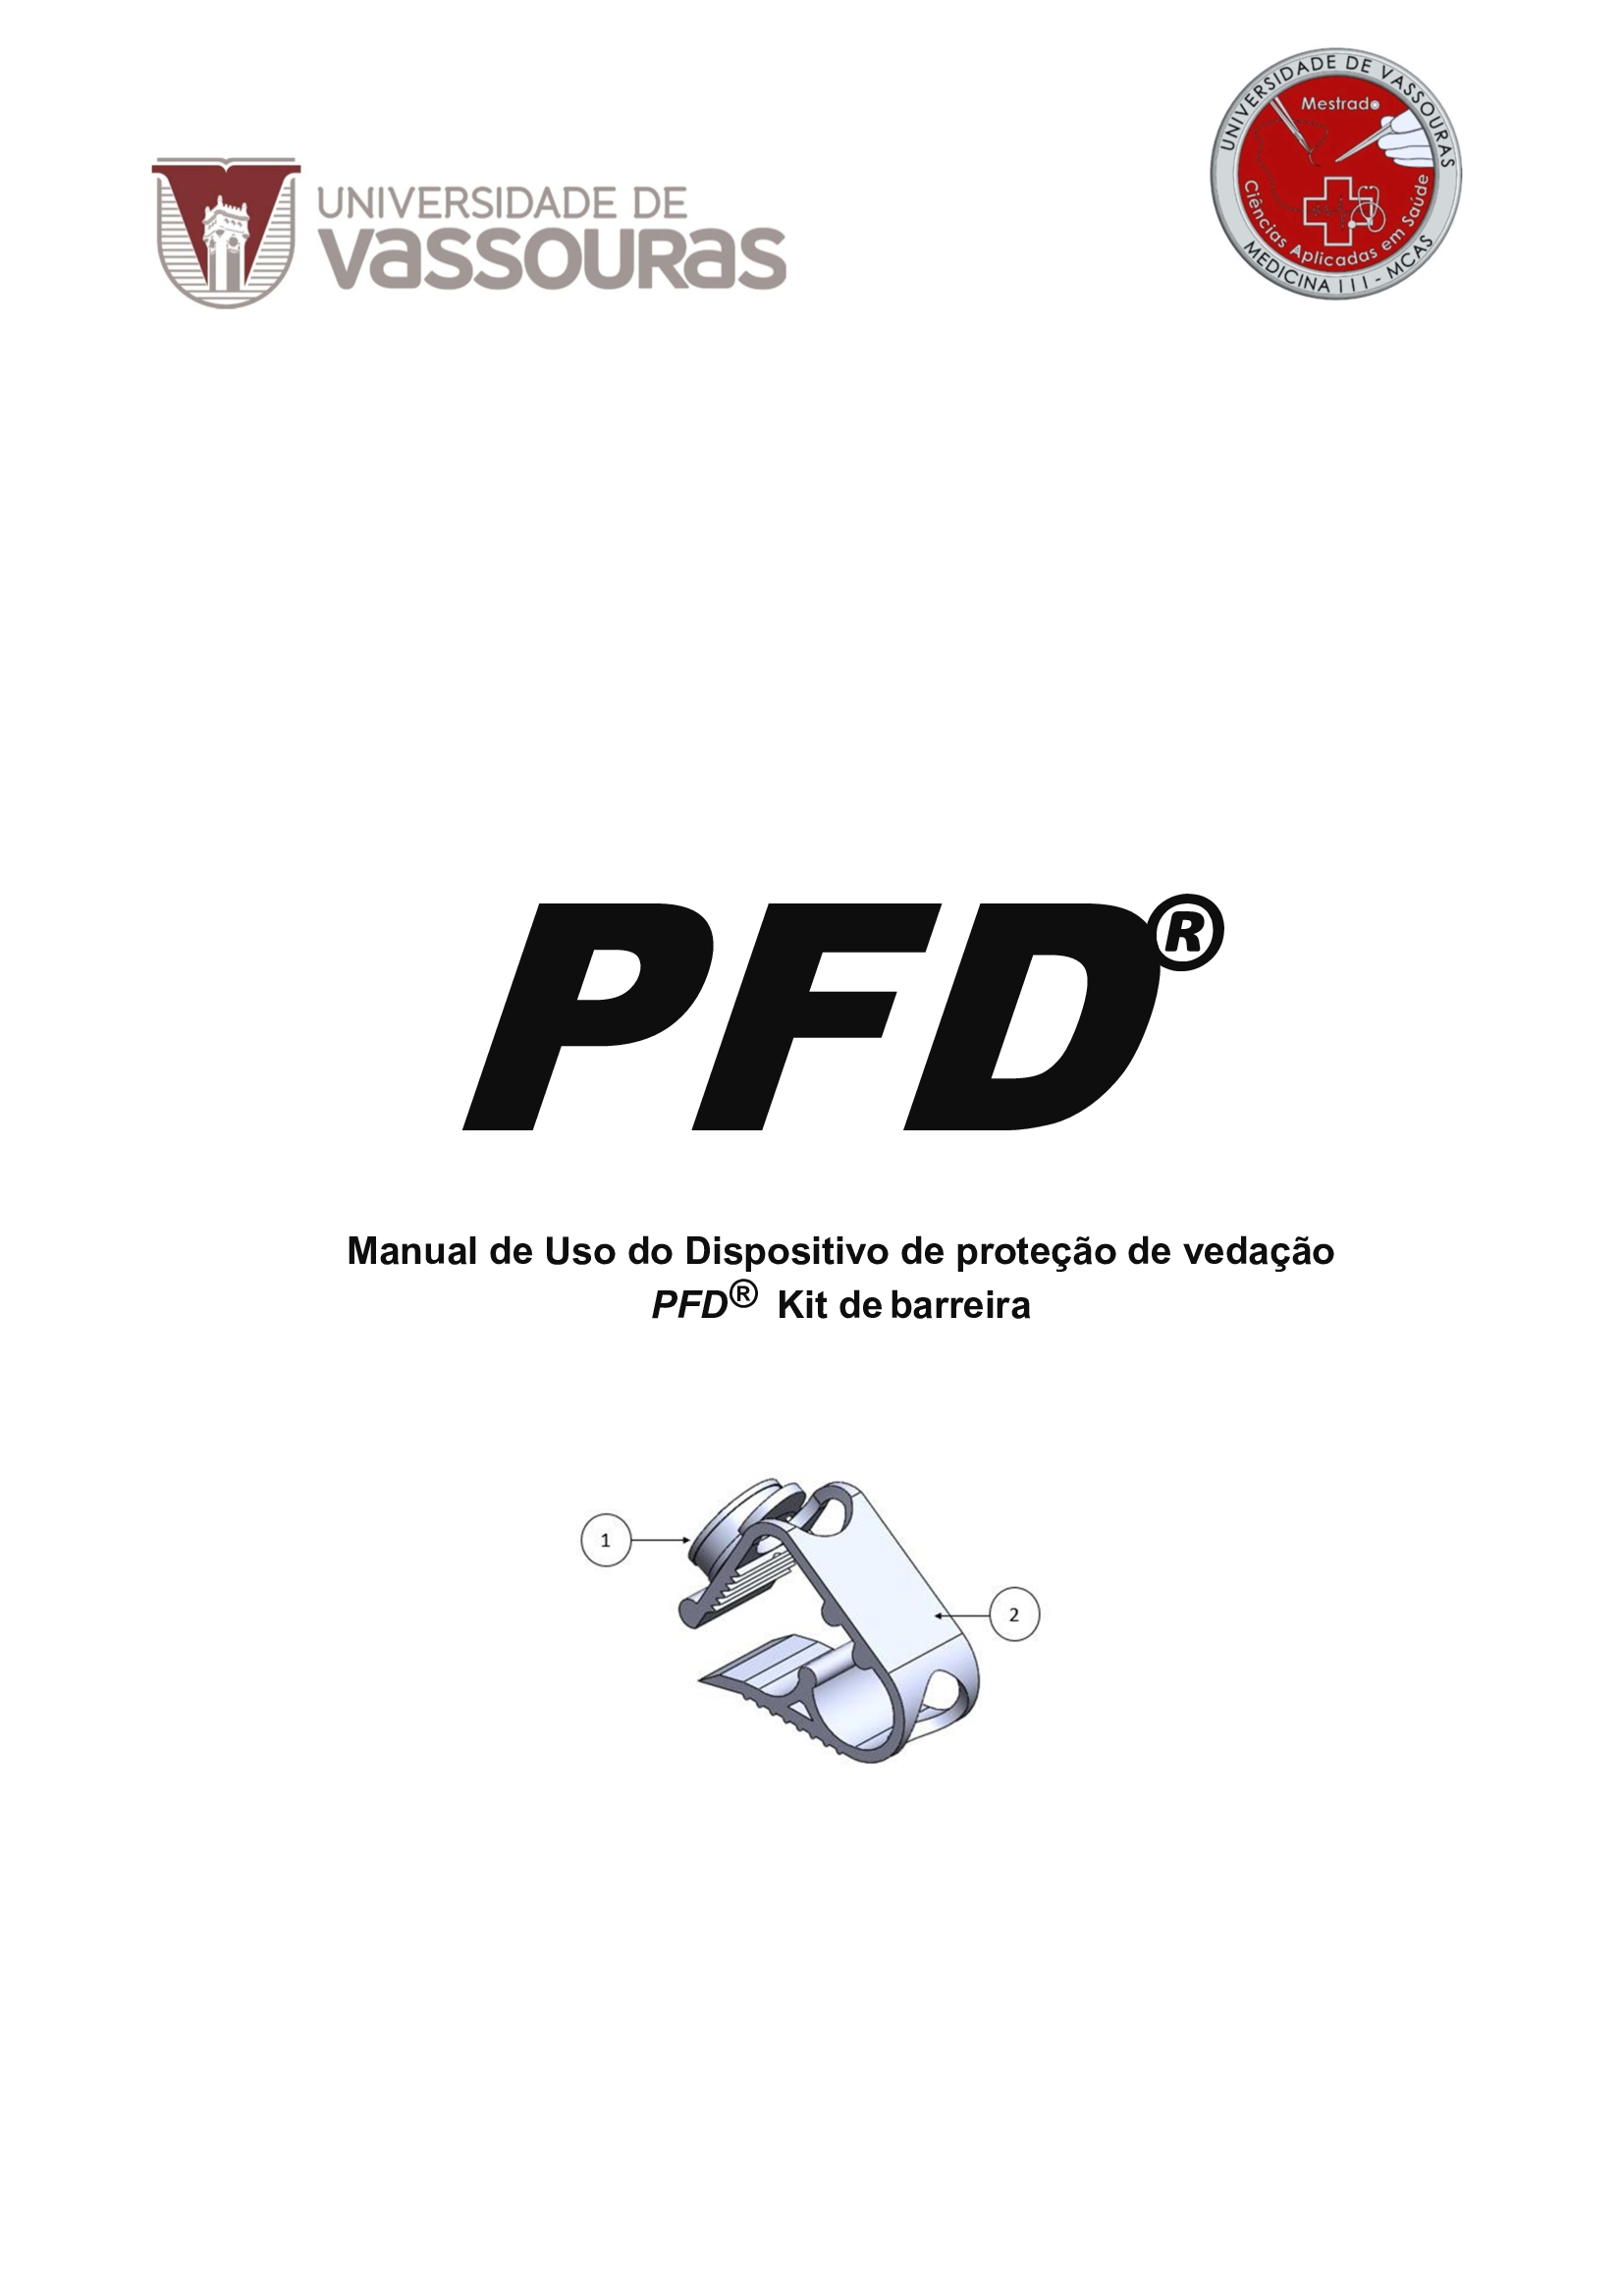 					View 2020: Manual de Uso do Dispositivo de proteção de vedação - PFD Kit de Barreira 
				